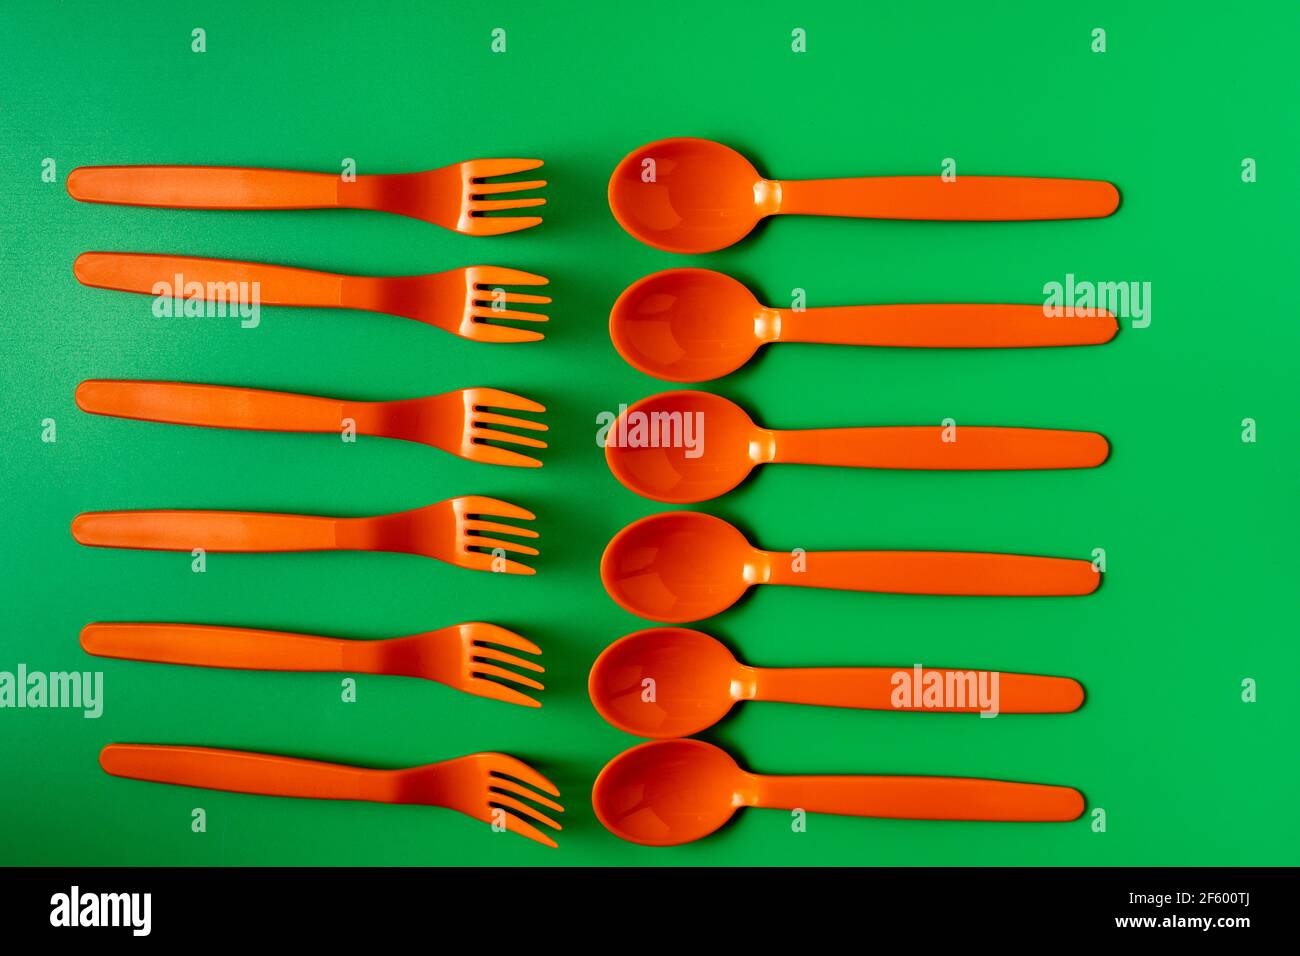 Cuillères et fourchettes en plastique orange sur fond vert. Concept écologique et sans plastique. Banque D'Images